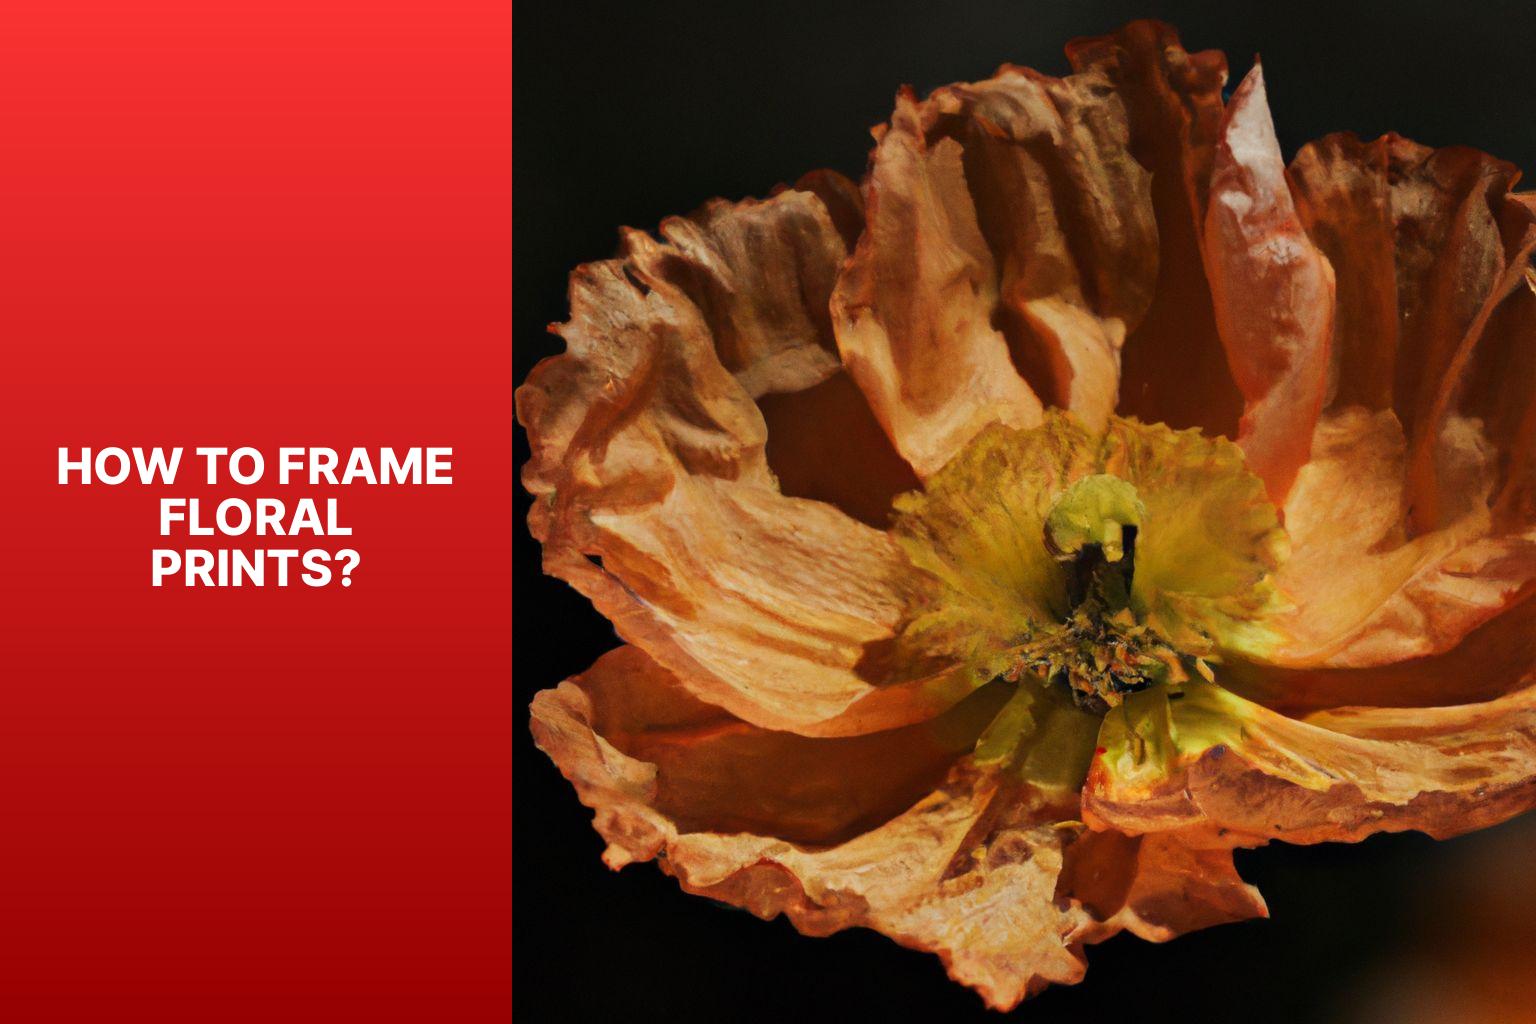 How to Frame Floral Prints? - Floral prints framed 